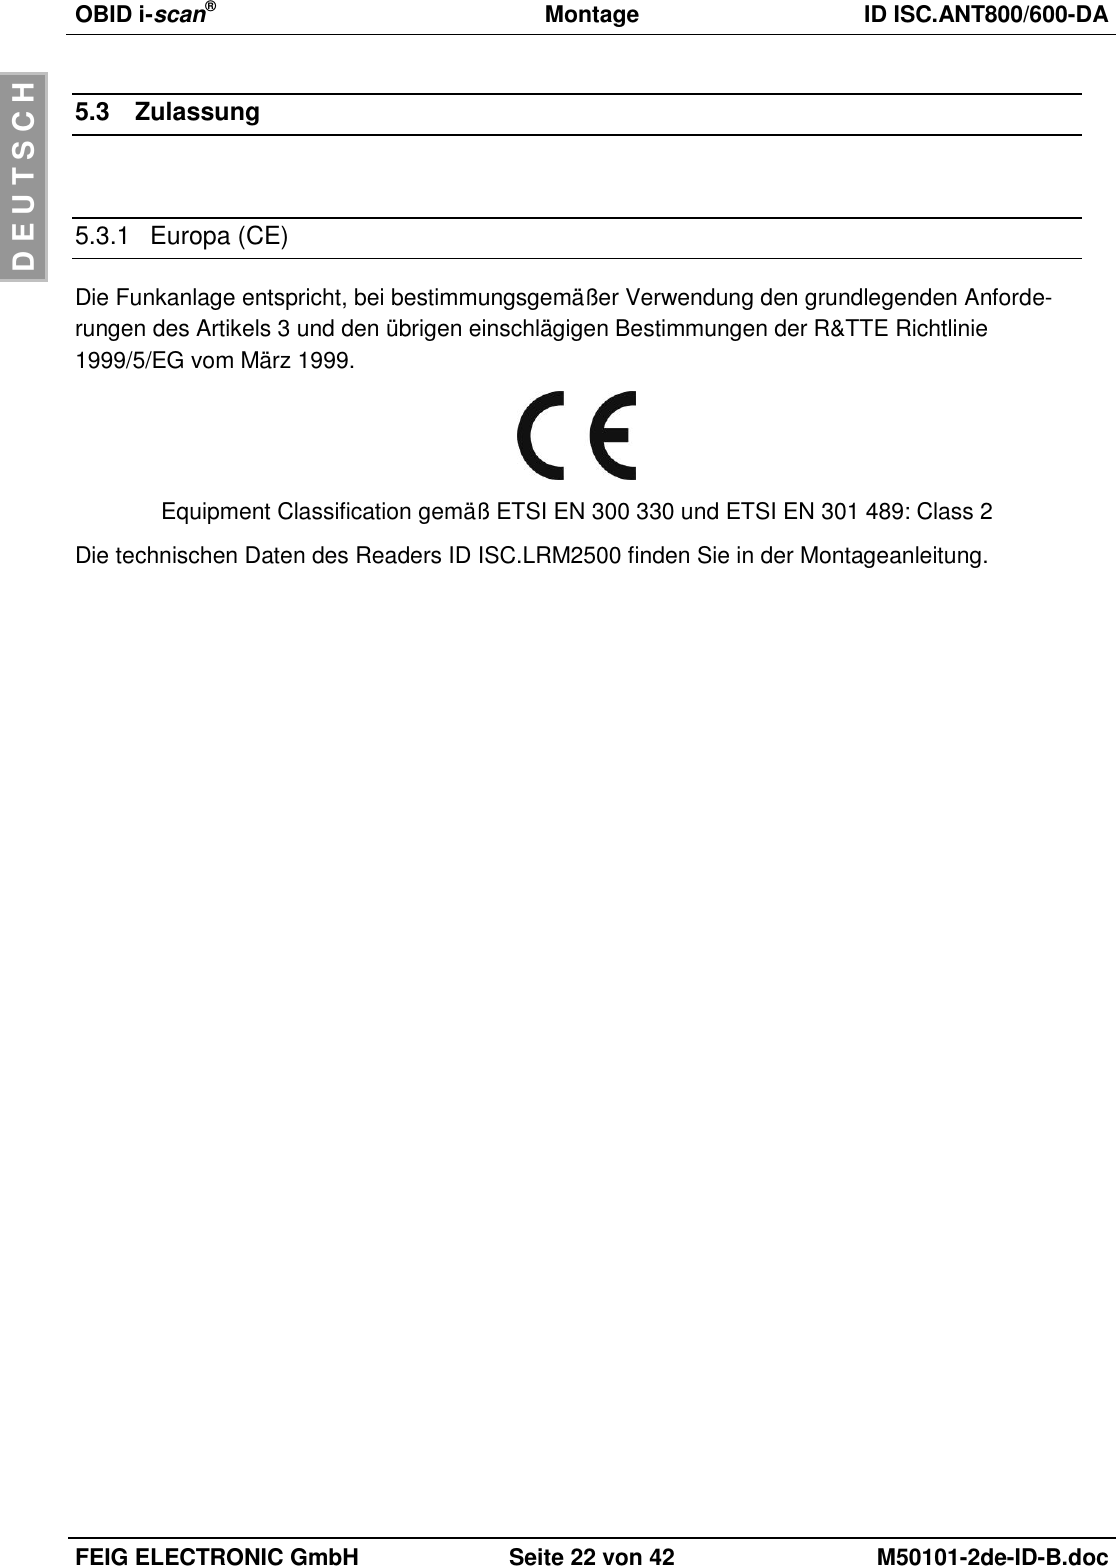 OBID i-scan®  Montage ID ISC.ANT800/600-DA  FEIG ELECTRONIC GmbH Seite 22 von 42 M50101-2de-ID-B.doc  D E U T S C H 5.3  Zulassung  5.3.1  Europa (CE) Die Funkanlage entspricht, bei bestimmungsgemäßer Verwendung den grundlegenden Anforde-rungen des Artikels 3 und den übrigen einschlägigen Bestimmungen der R&amp;TTE Richtlinie 1999/5/EG vom März 1999.  Equipment Classification gemäß ETSI EN 300 330 und ETSI EN 301 489: Class 2 Die technischen Daten des Readers ID ISC.LRM2500 finden Sie in der Montageanleitung. 